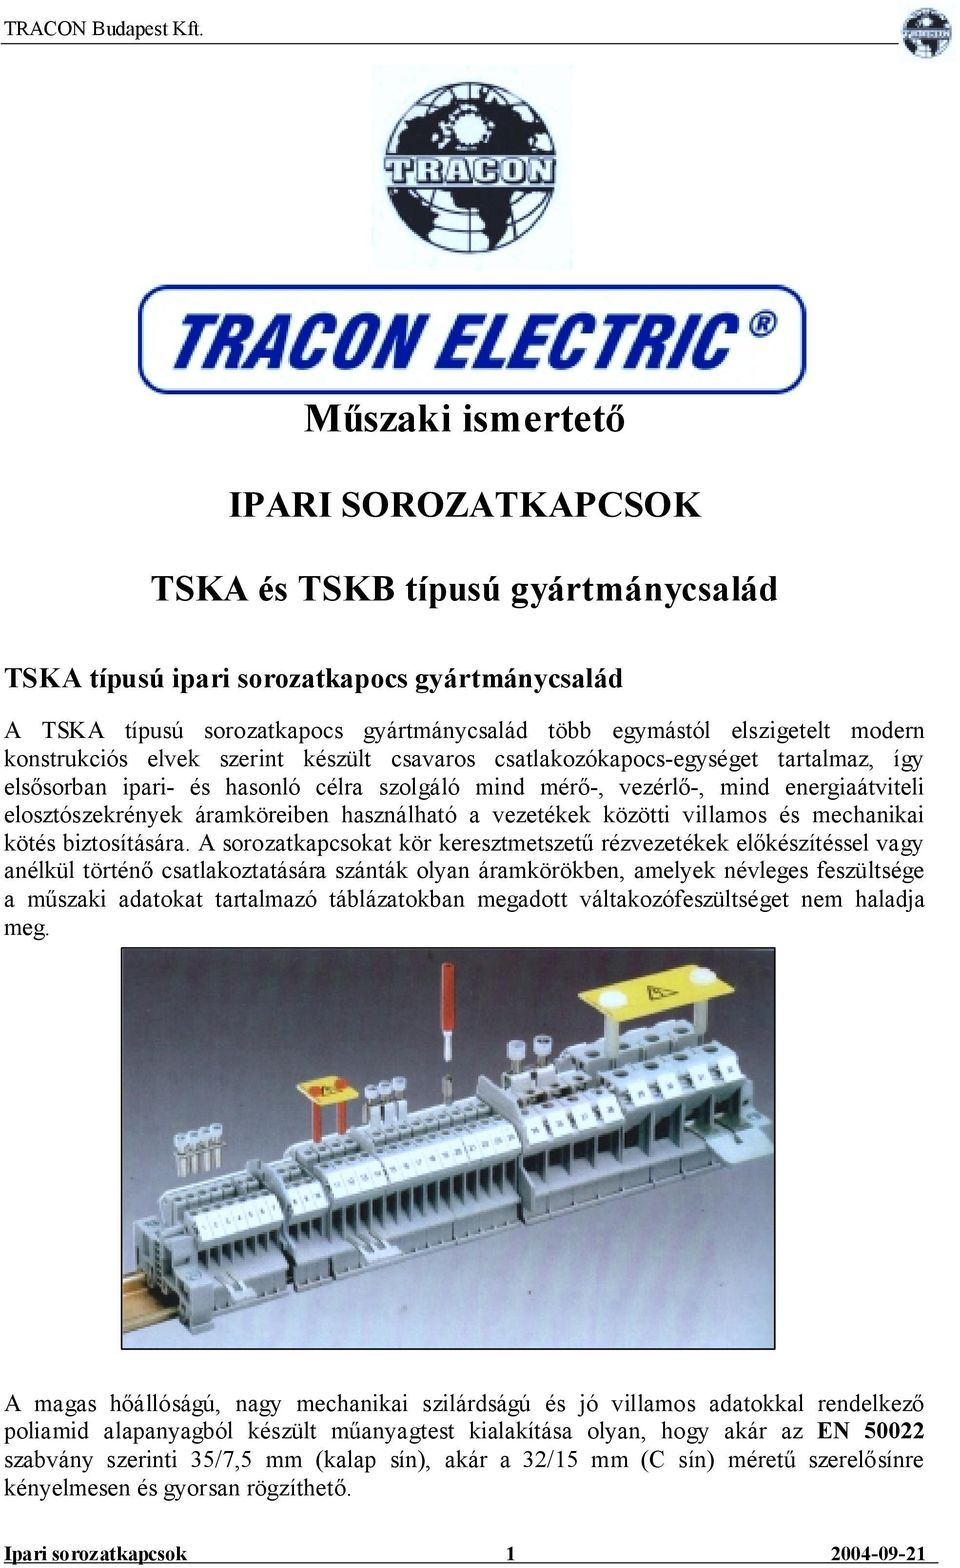 Műszaki ismertető IPARI SOROZATKAPCSOK. TSKA és TSKB típusú gyártmánycsalád  - PDF Ingyenes letöltés